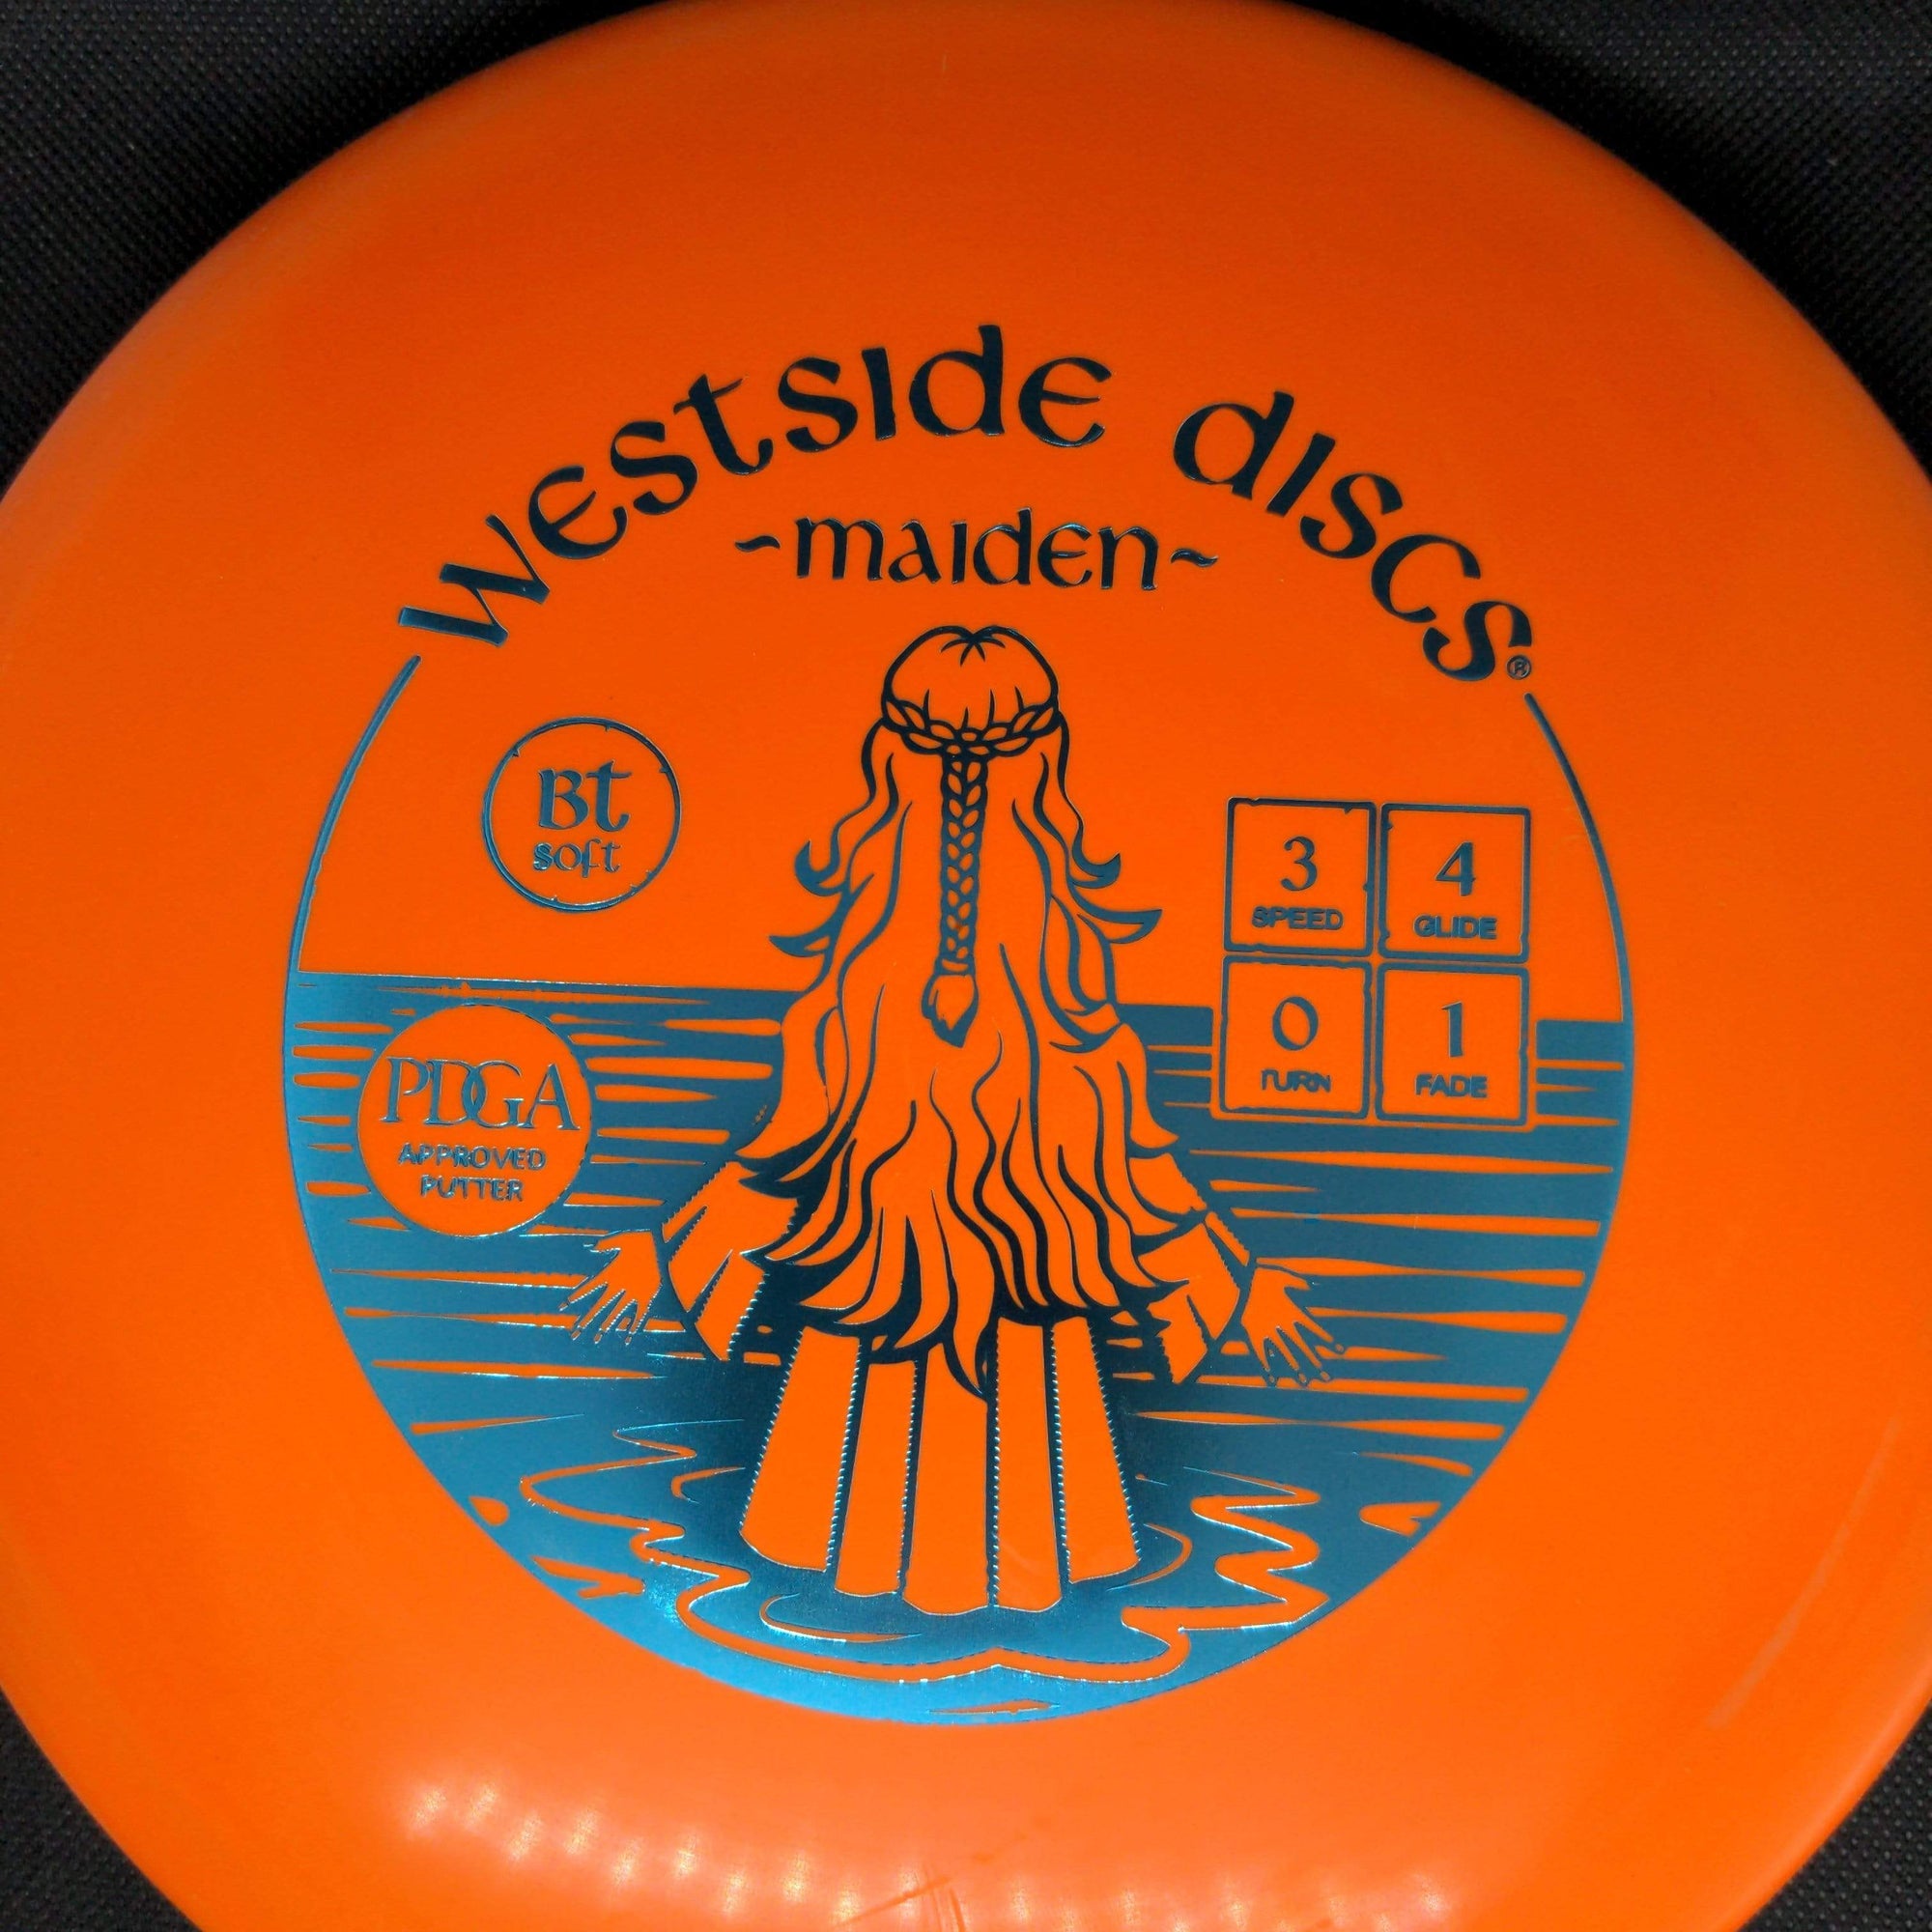 Westside Discs Putter Orange Teal Stamp 176g Maiden BT Soft Plastic